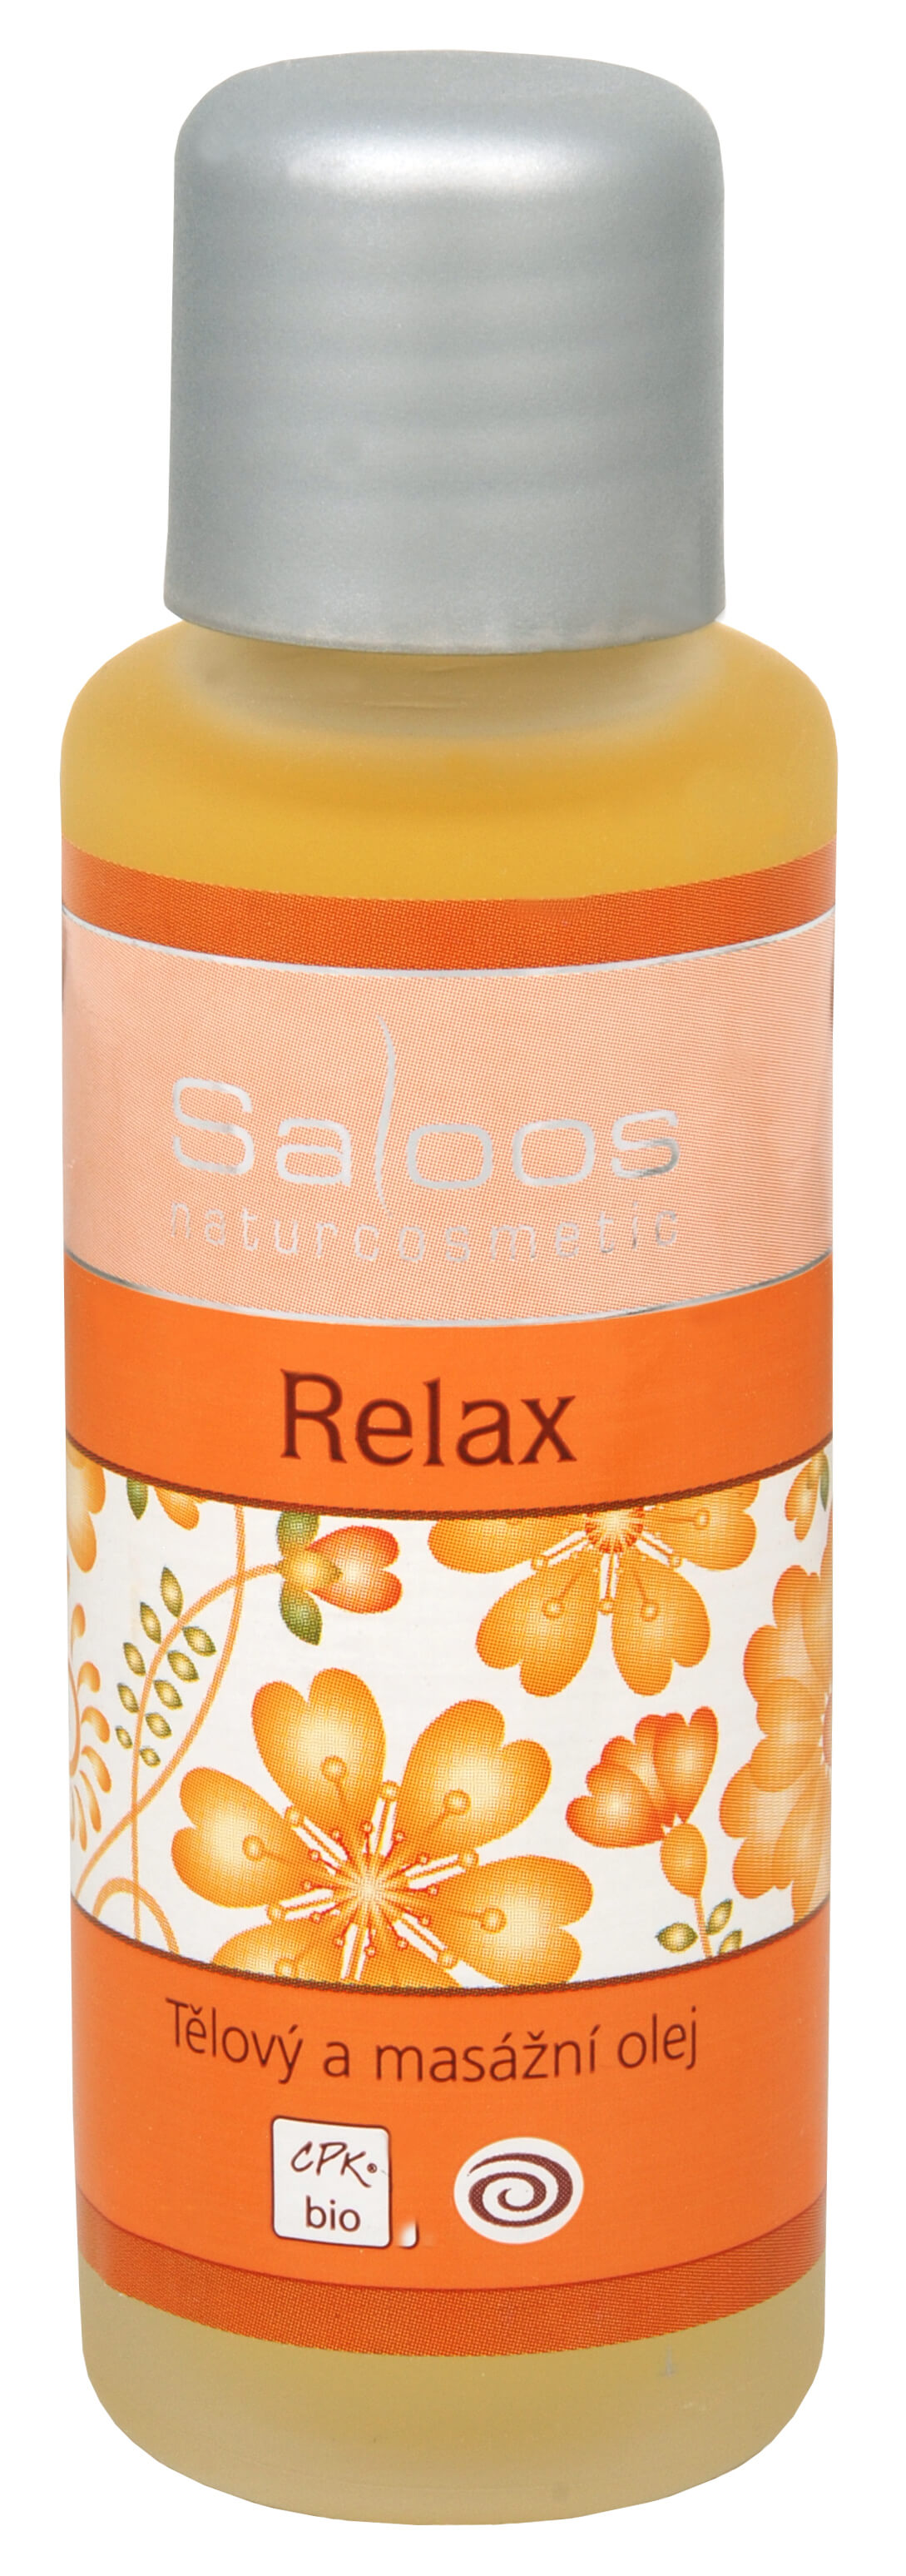 Zobrazit detail výrobku Saloos Bio tělový a masážní olej - Relax 500 ml